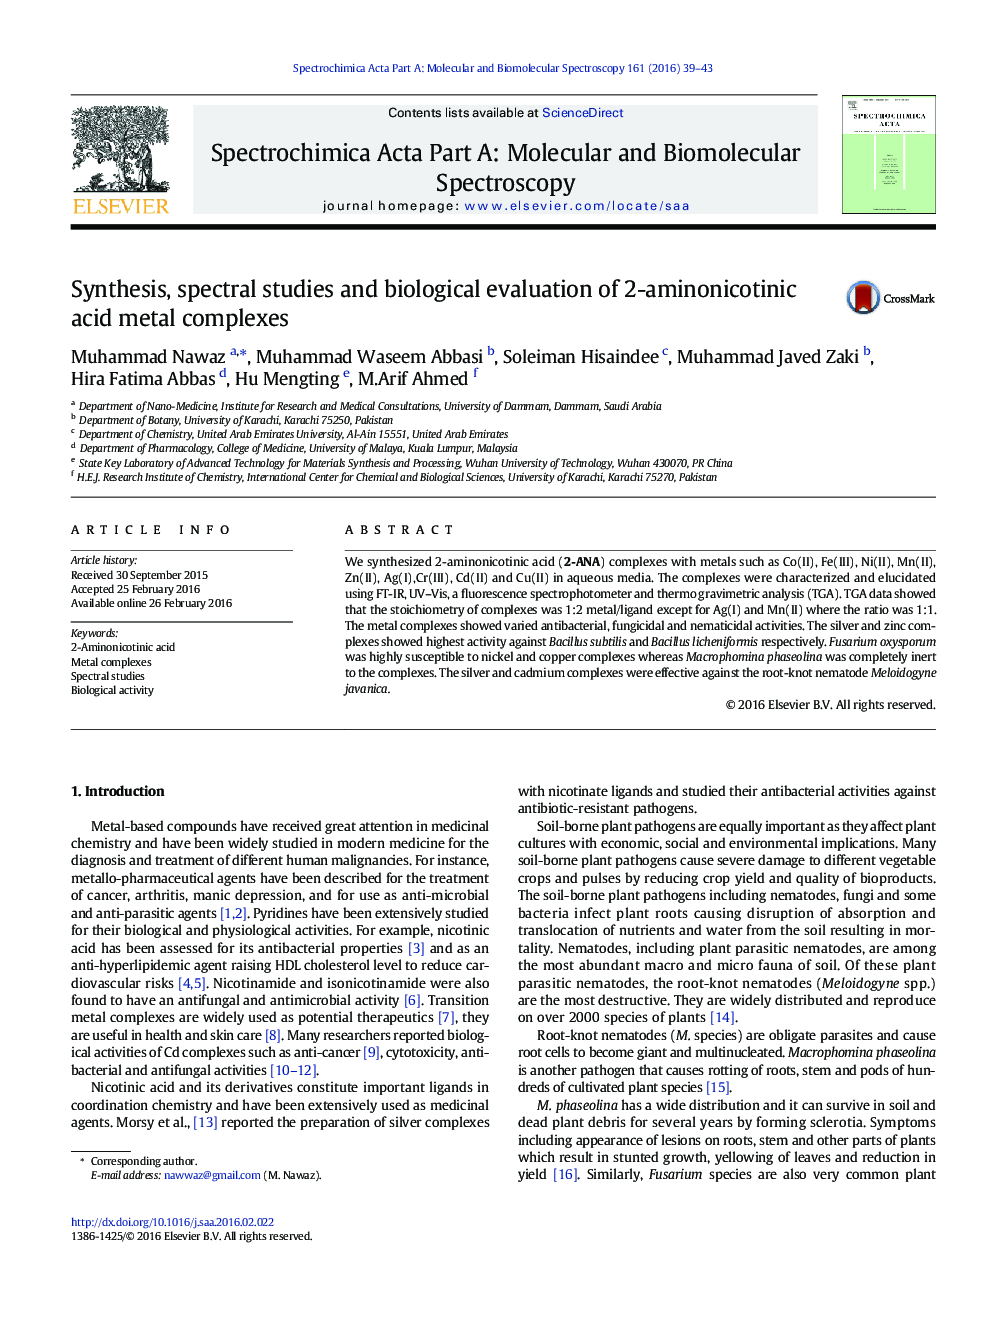 سنتز، مطالعات طیفی و ارزیابی بیولوژیکی مجتمع های فلزی 2-آمینونیکوتینی اسید 